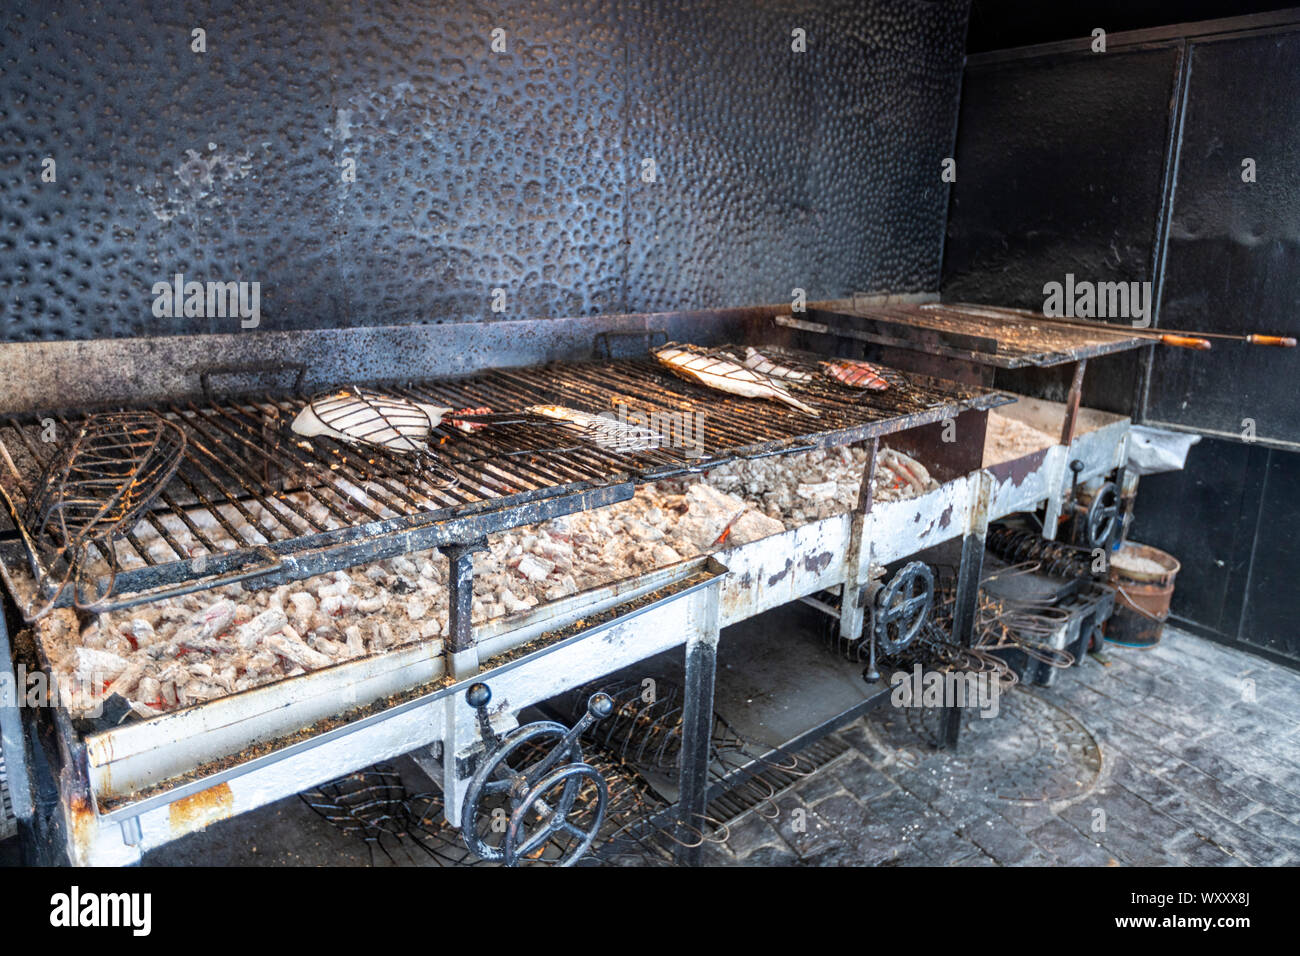 Préparer les poissons grillés dans Kaia Kaipe restaurant, Getaria, Gipuzkoa, Pays Basque, Espagne Banque D'Images